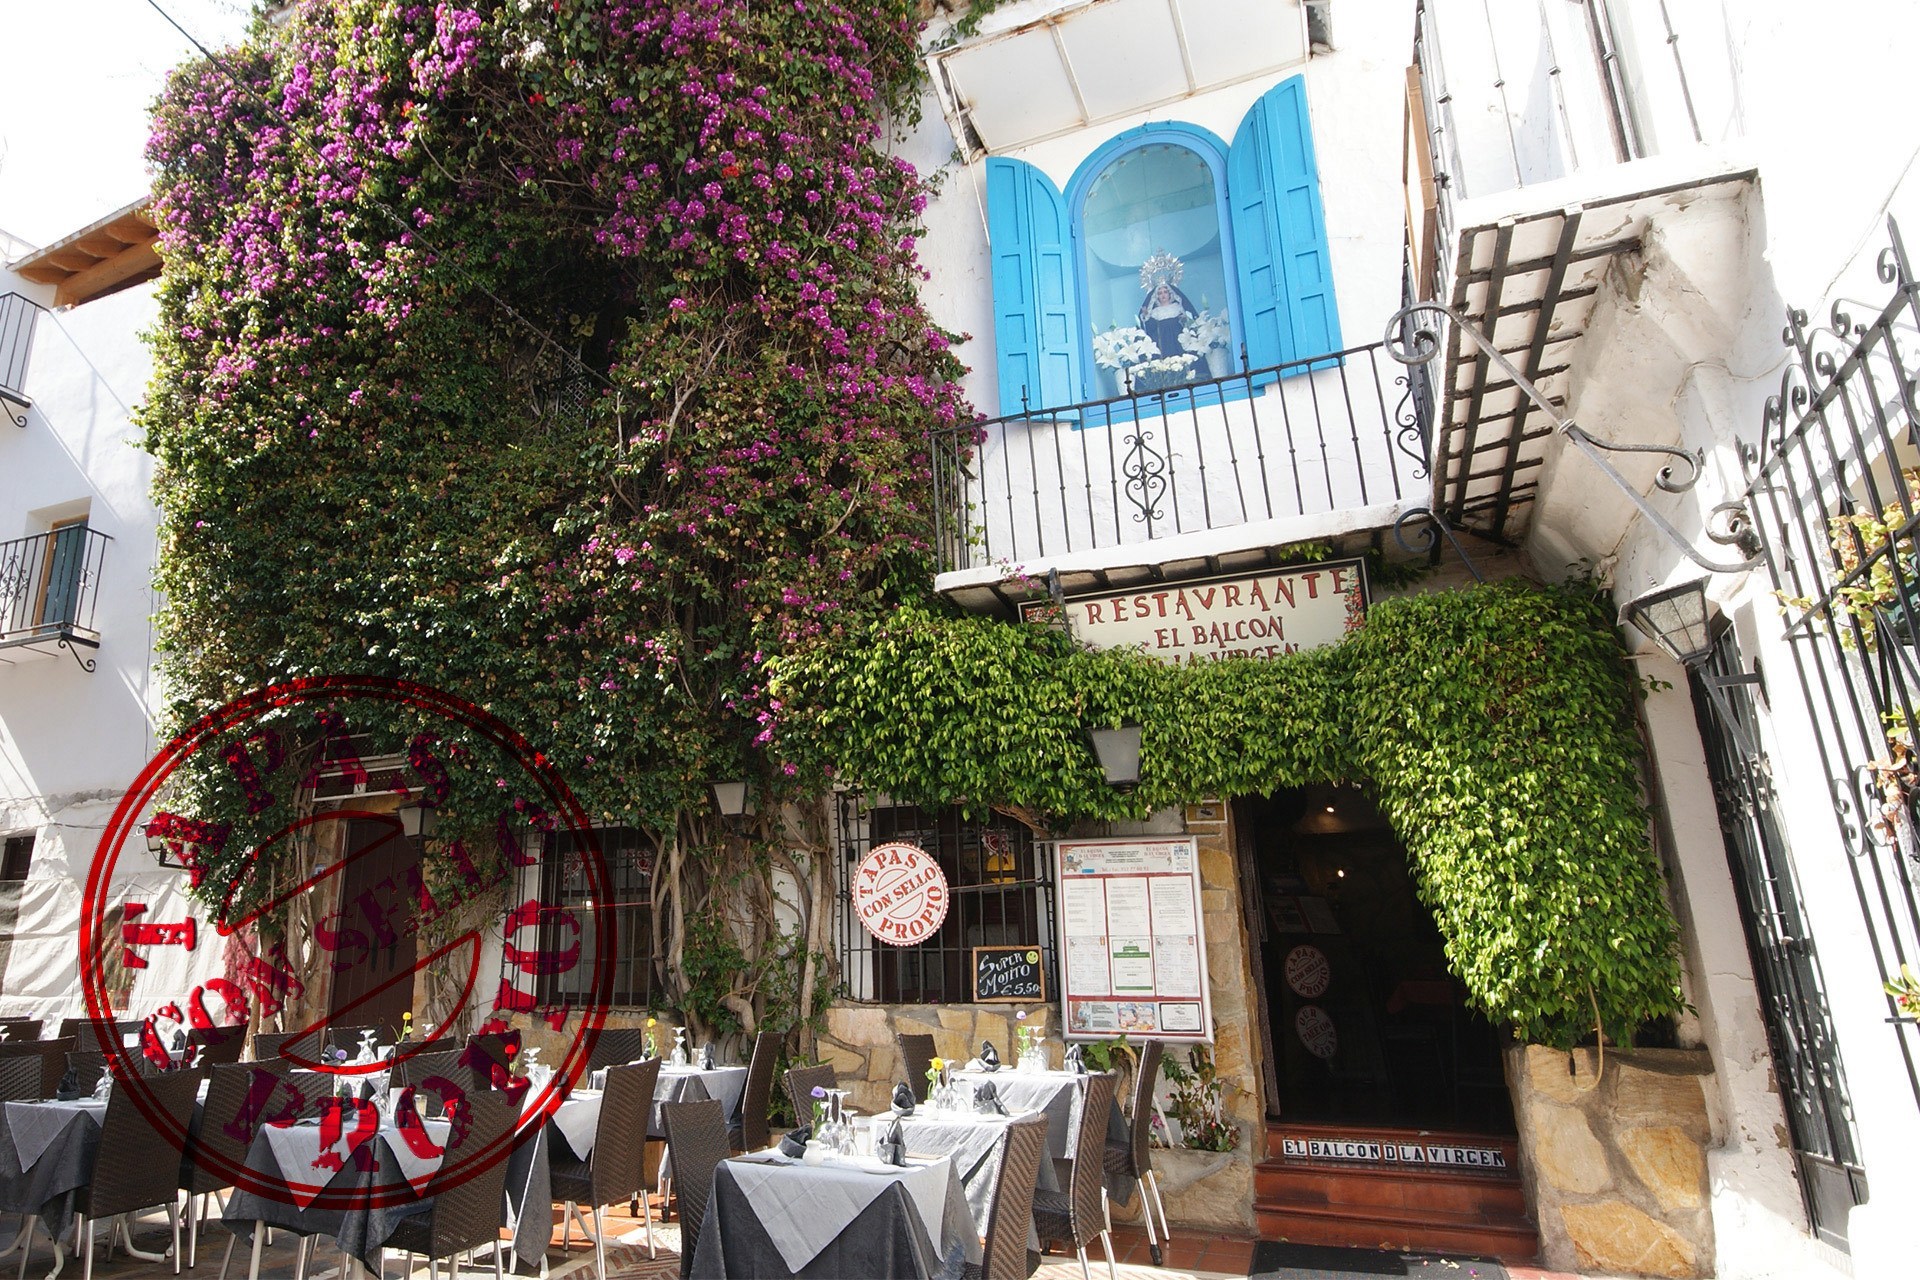 Restaurante para cenar en el centro de Marbella